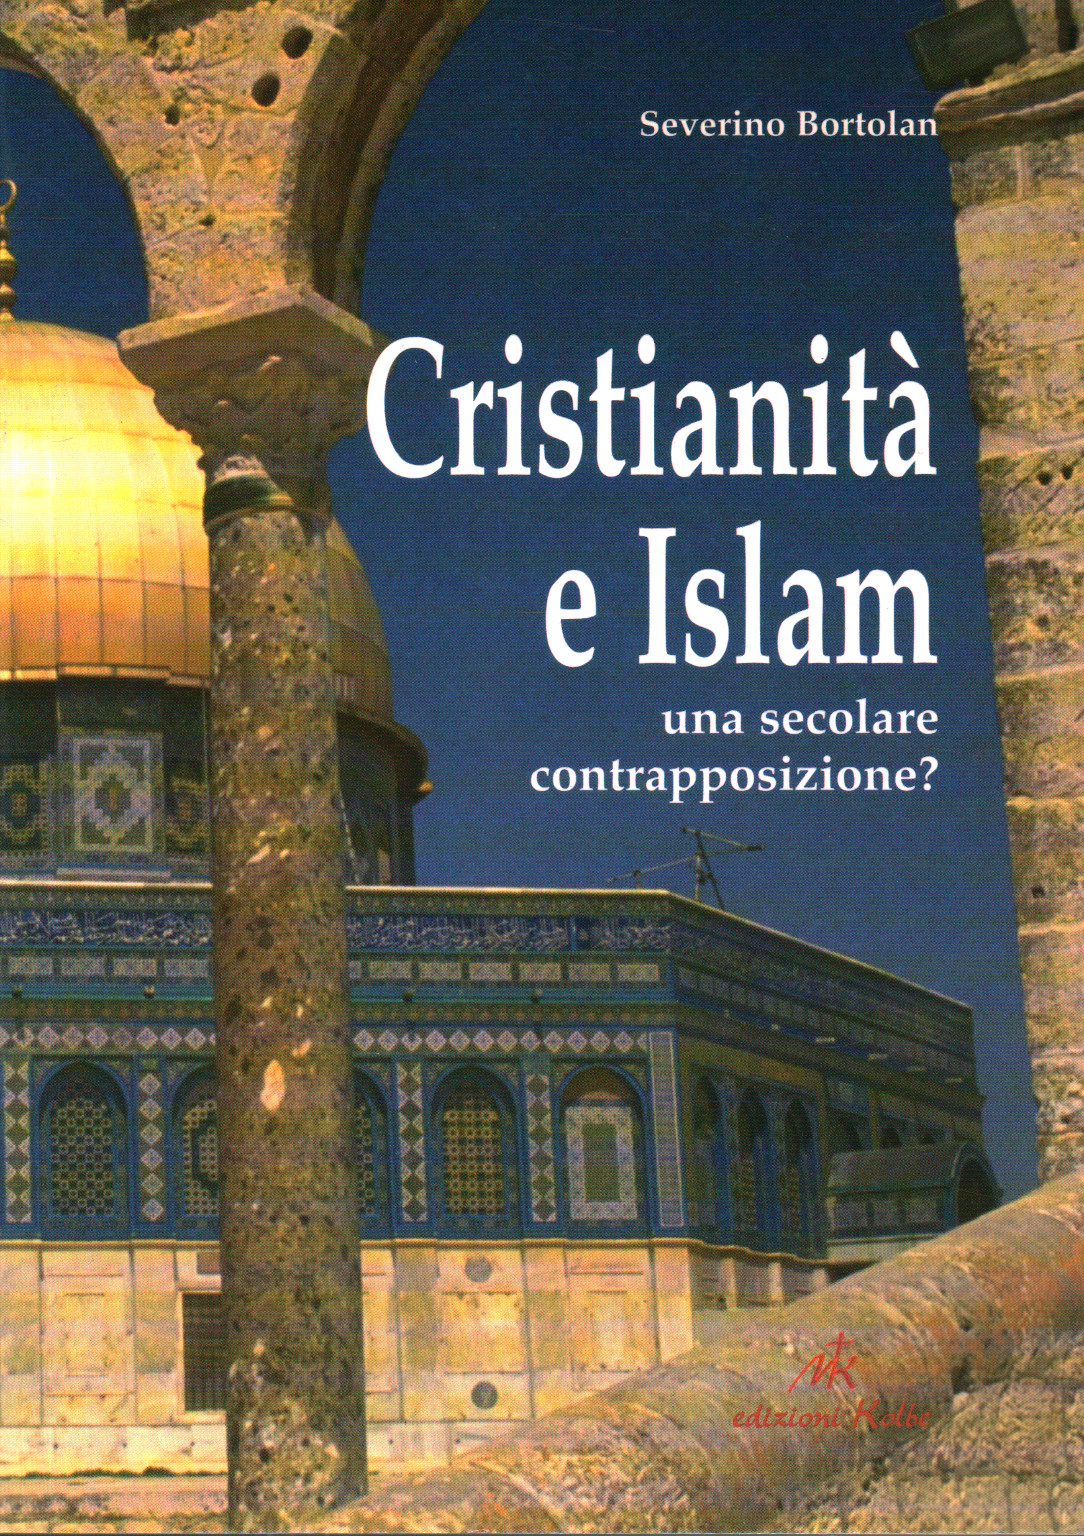 Cristianità e Islam una secolare contrapposizione, s.a.